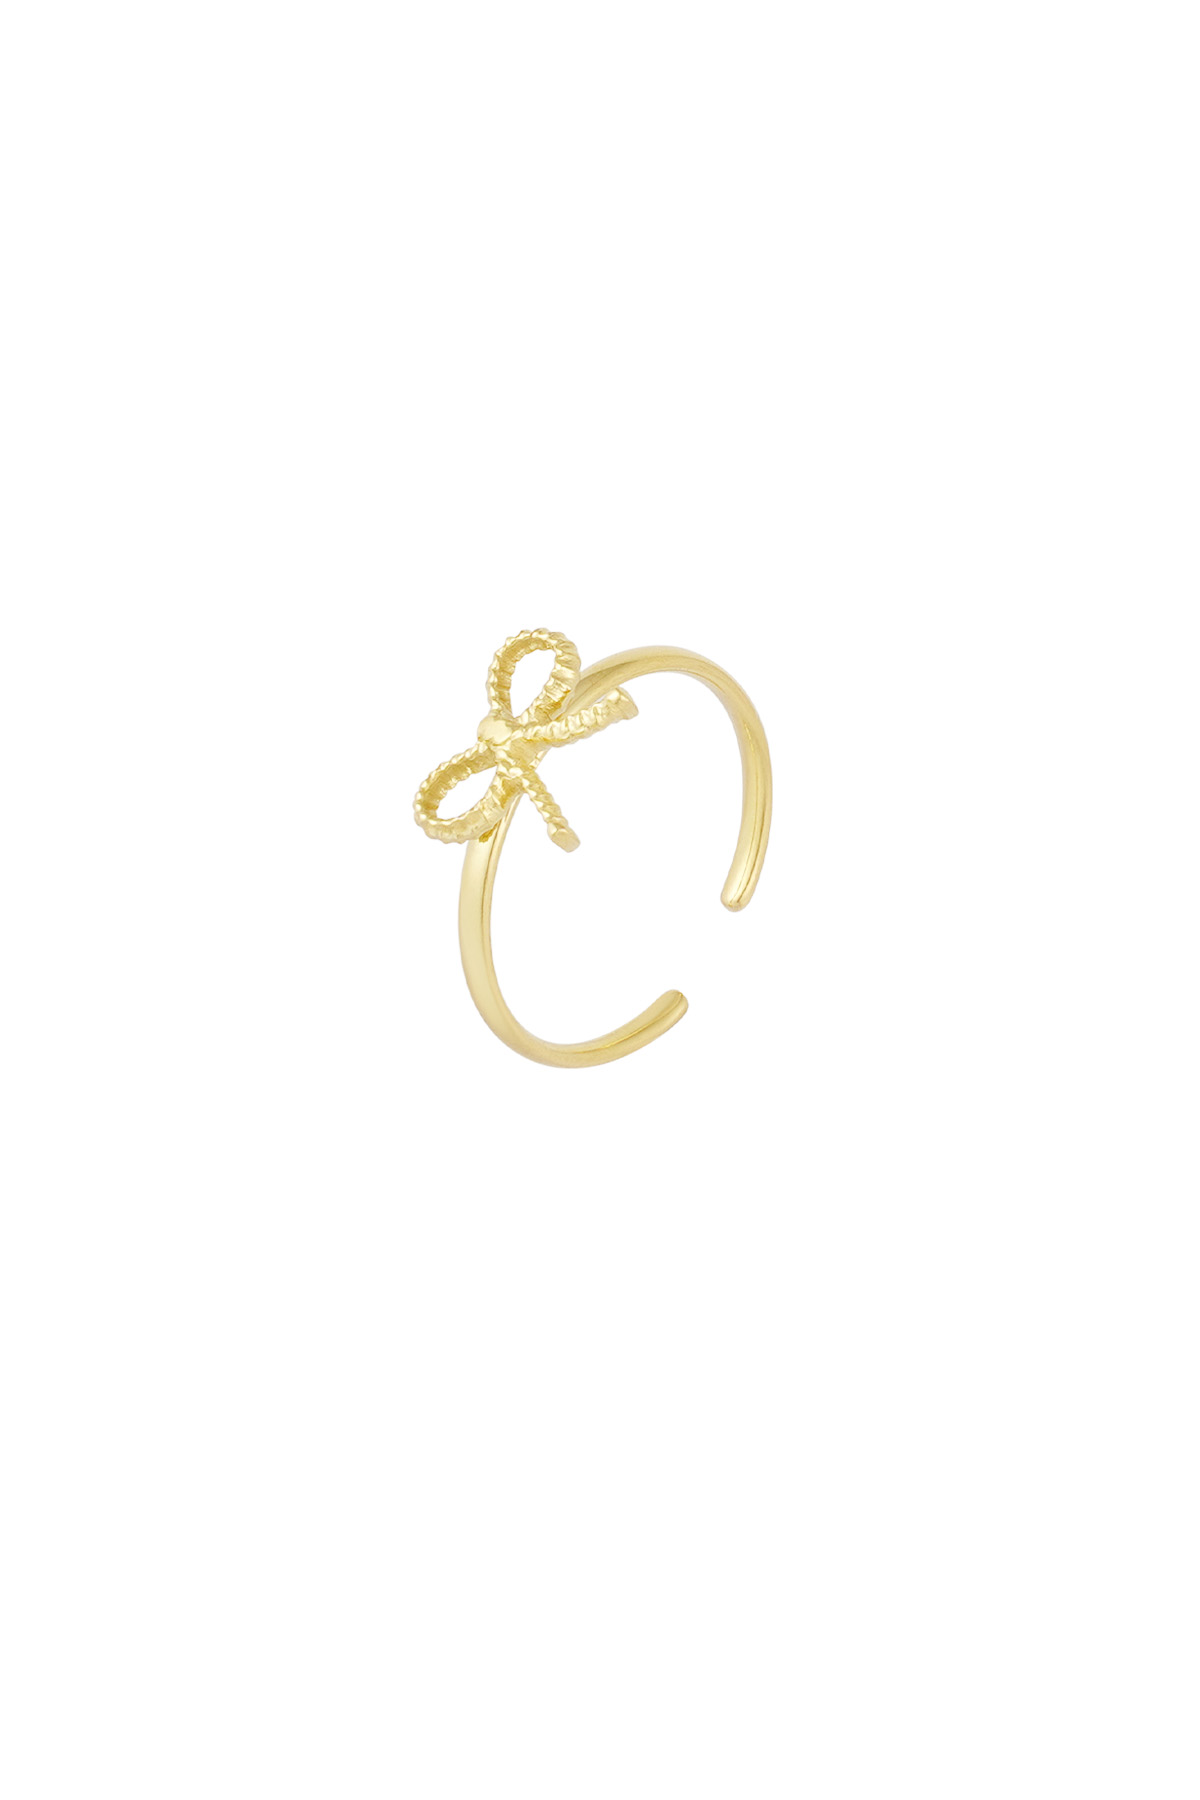 Ring bow basic - goud